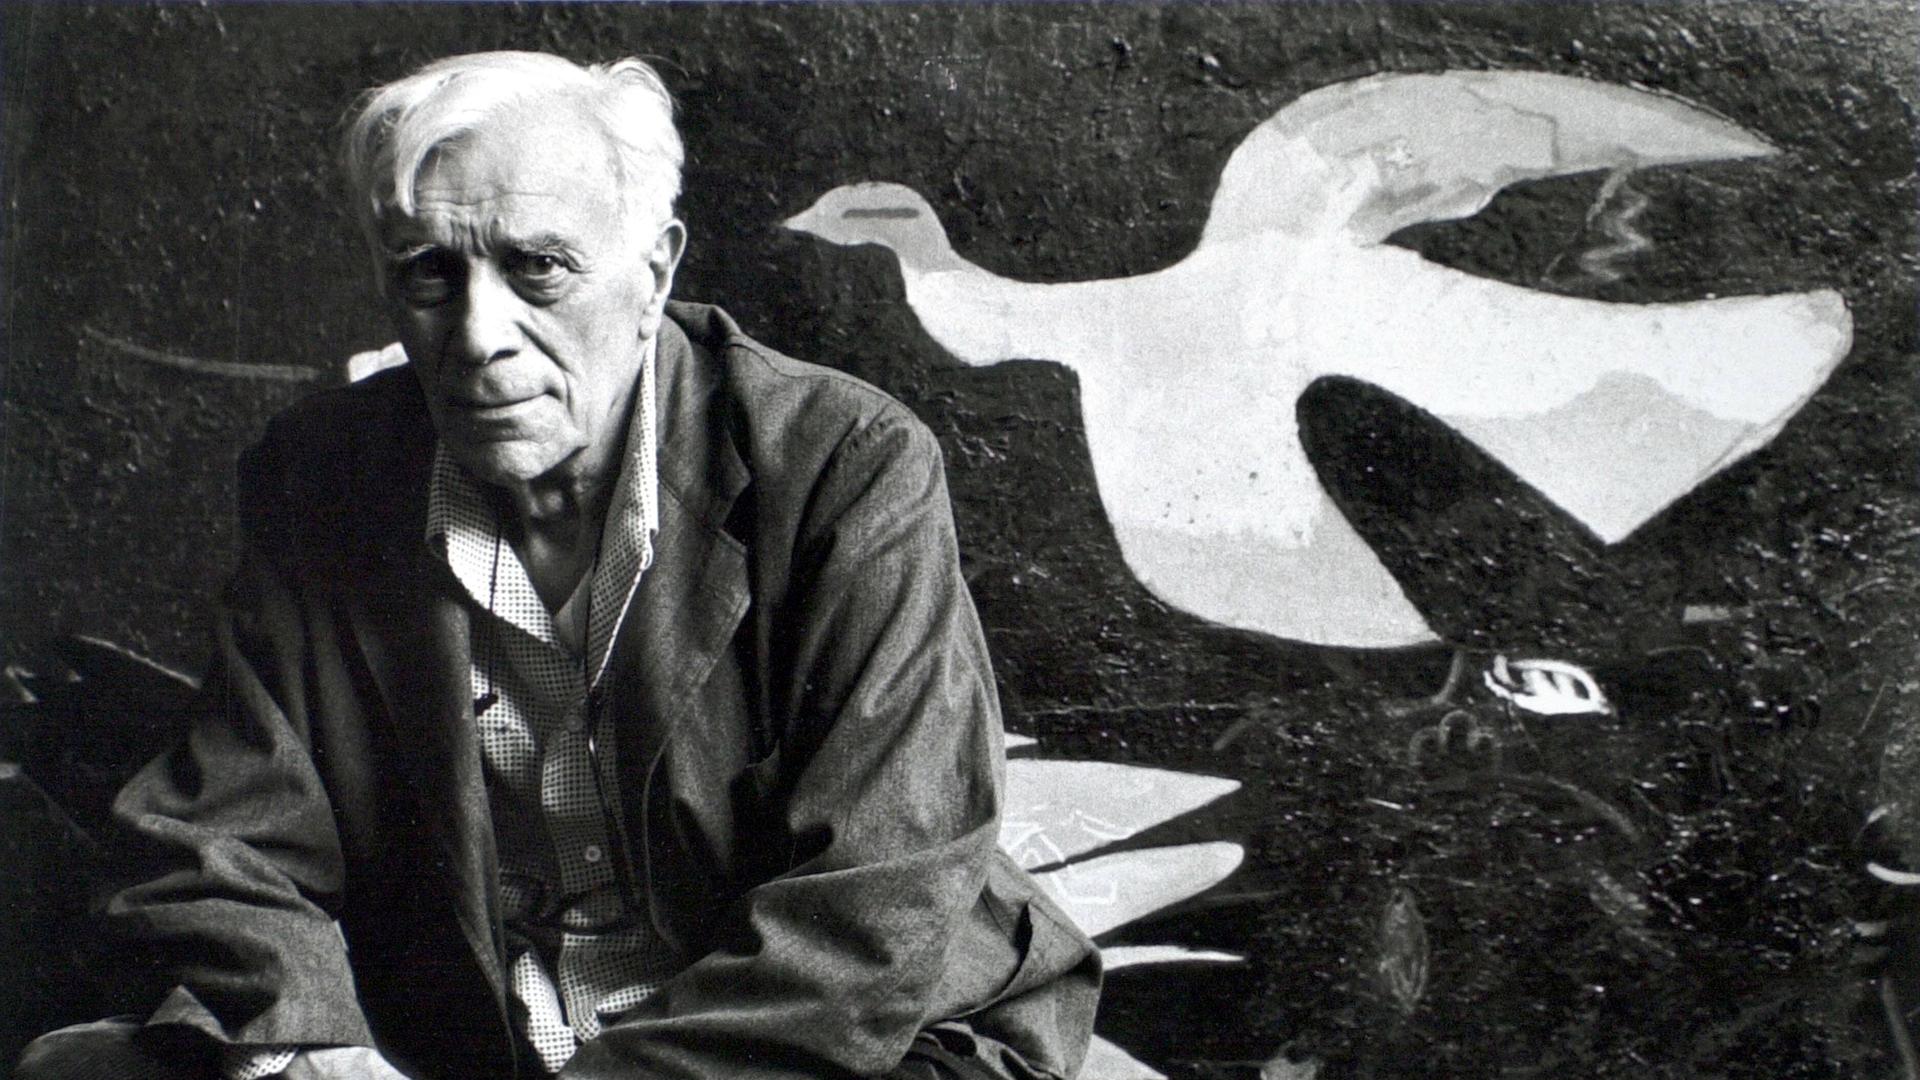 Schwarzweiß-Foto zeigt in die Kamera blickenden Mann vor einer Leinwand mit kubistisch abstrahierter Taube